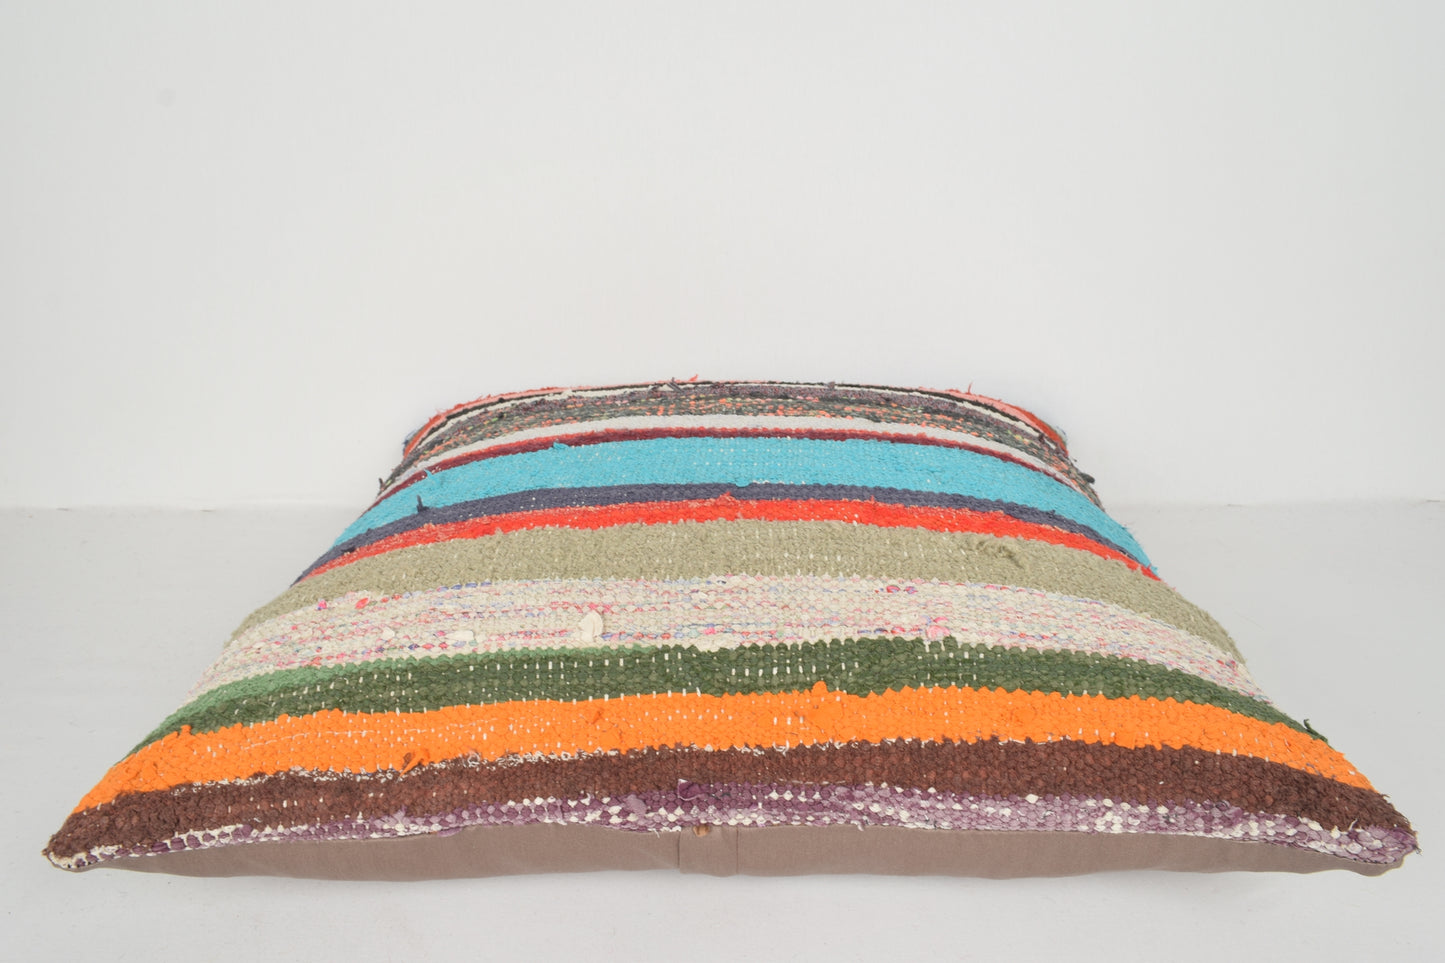 Orange Kilim Cushion Covers A00768 Wool throw pillow cover Body pillows 24x24